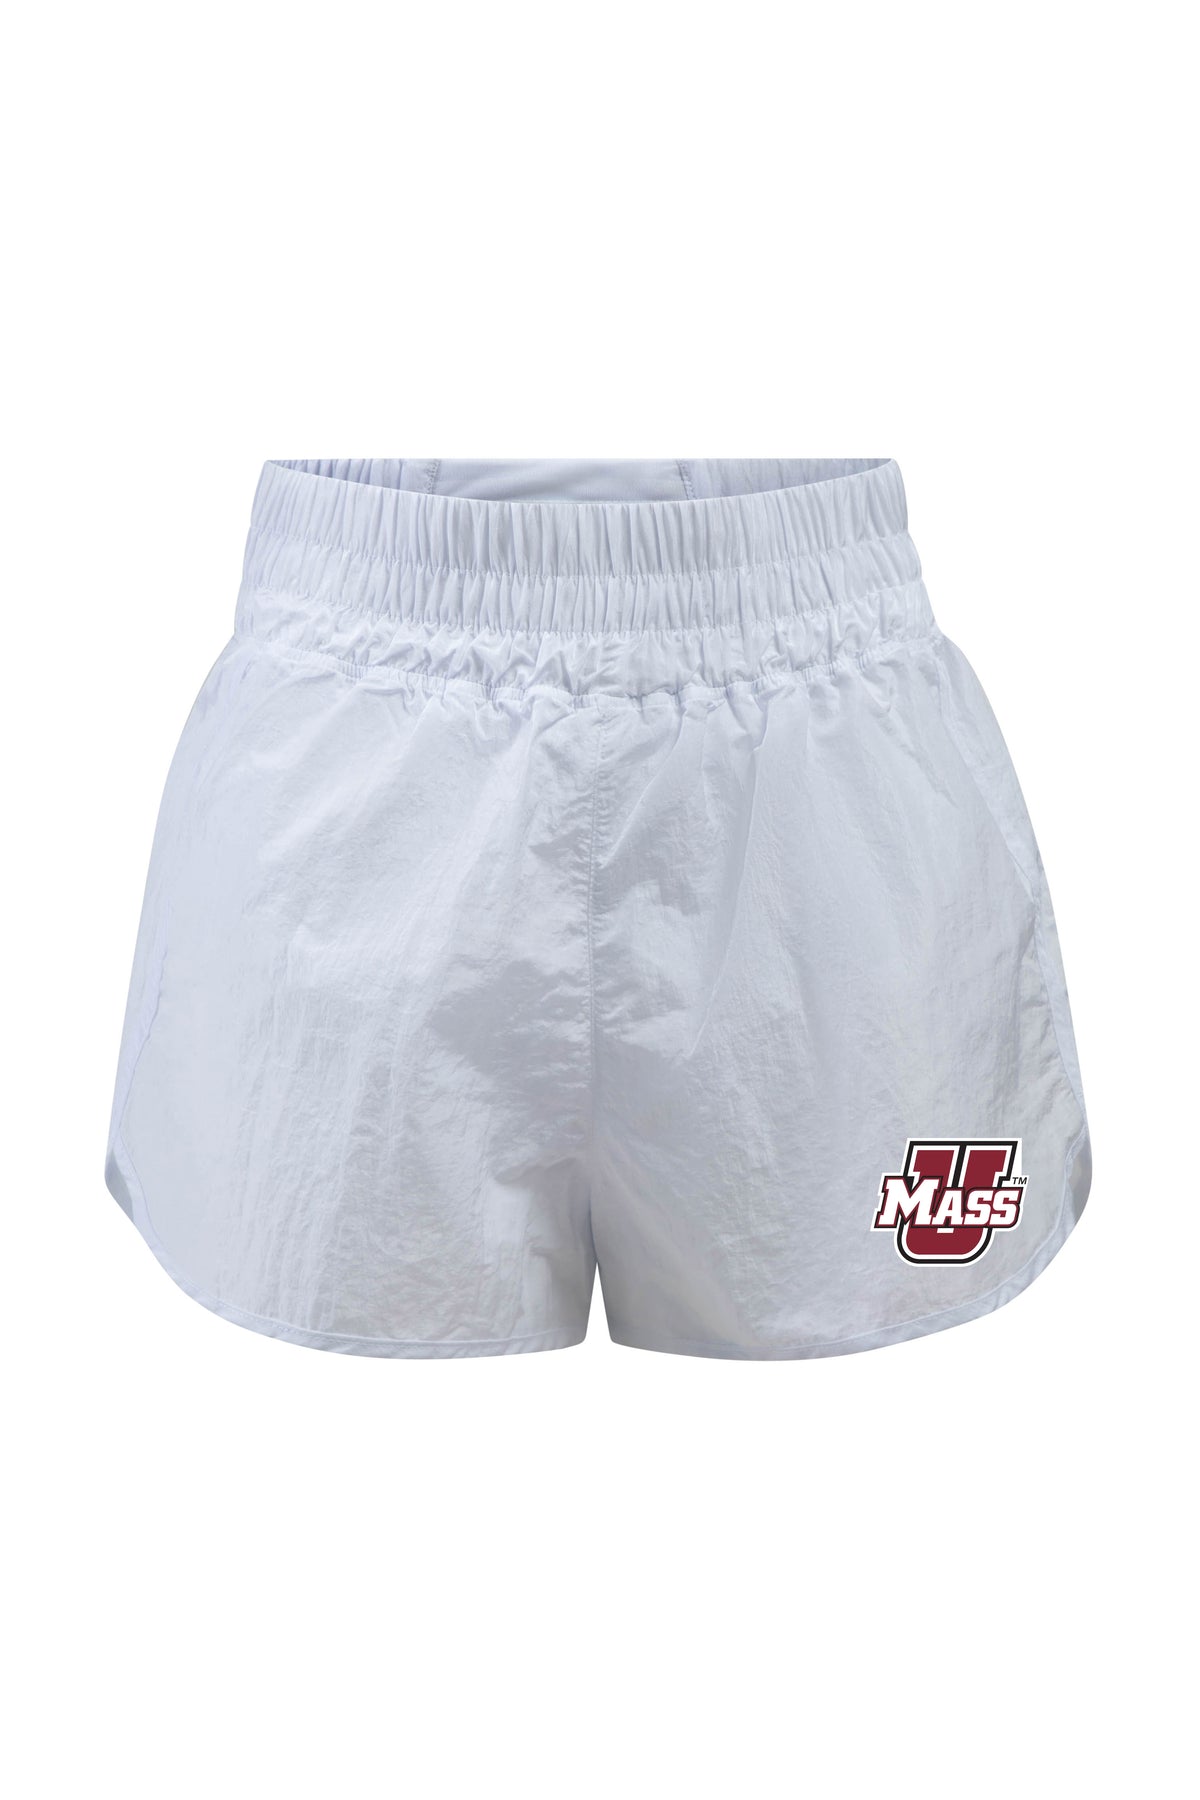 University of Massachusetts Boxer Short